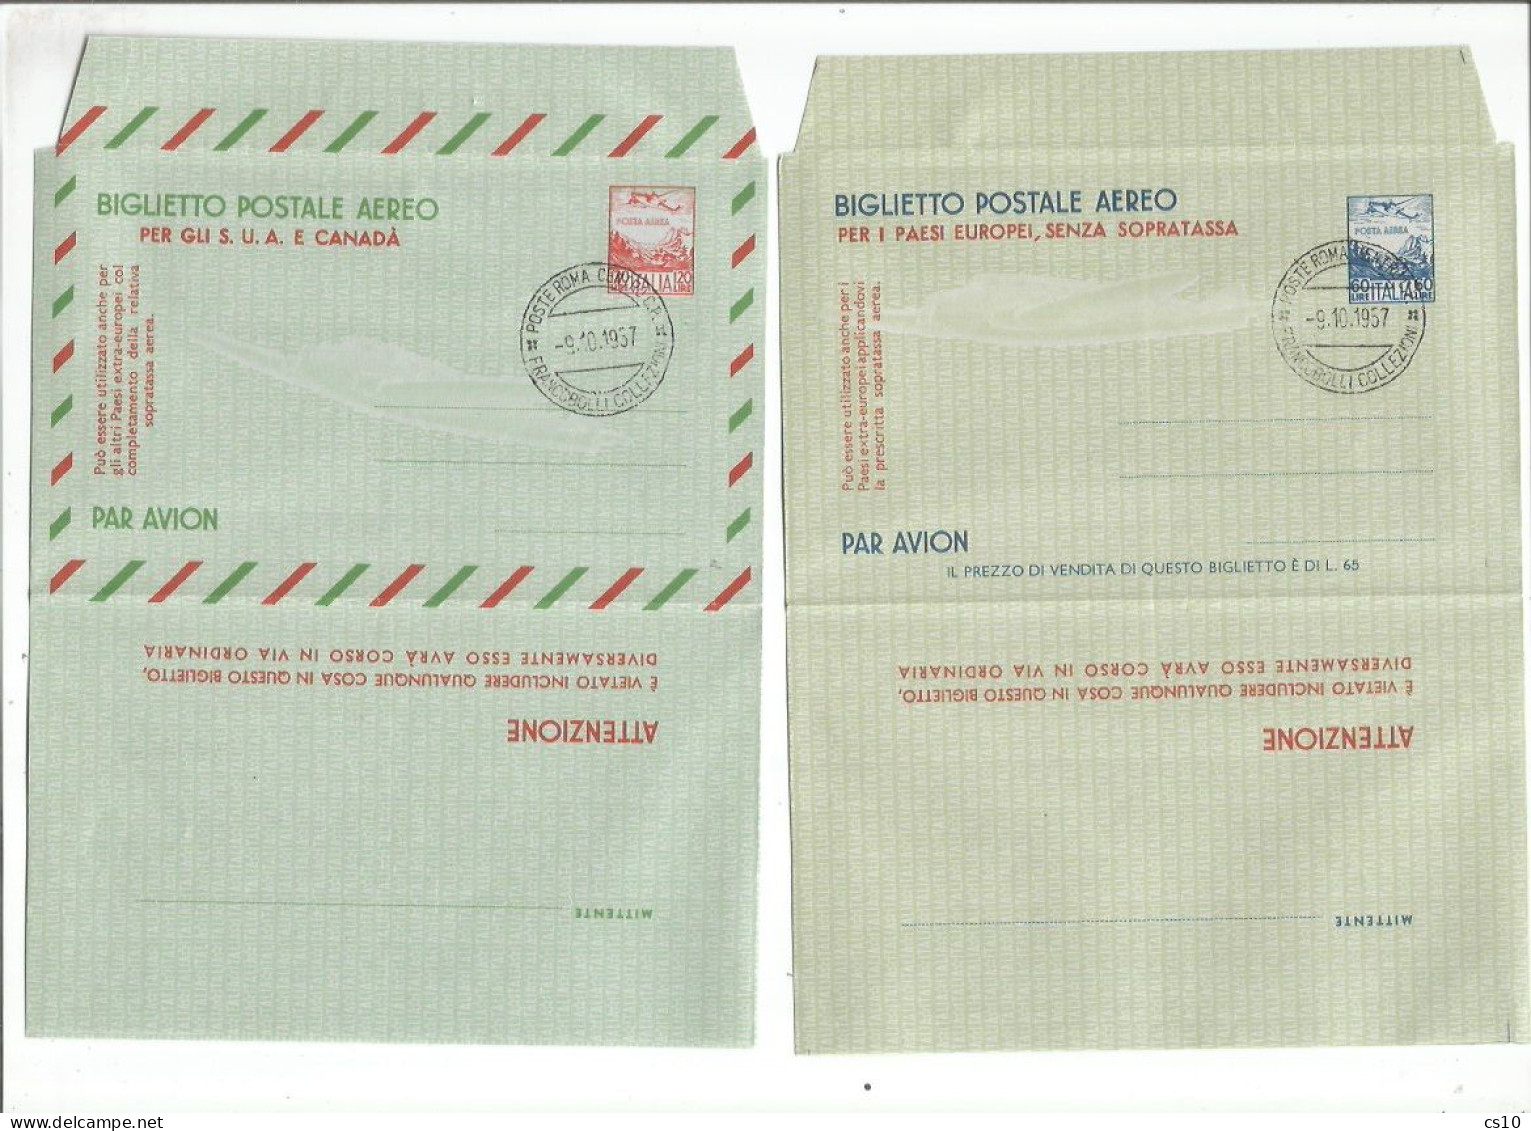 Italia Areogrammi Biglietto Postale Aereo # 1/2 Nuovi L.60 E L.120 - Con Annullo Filatelico Roma 9ott1957 - Airmail